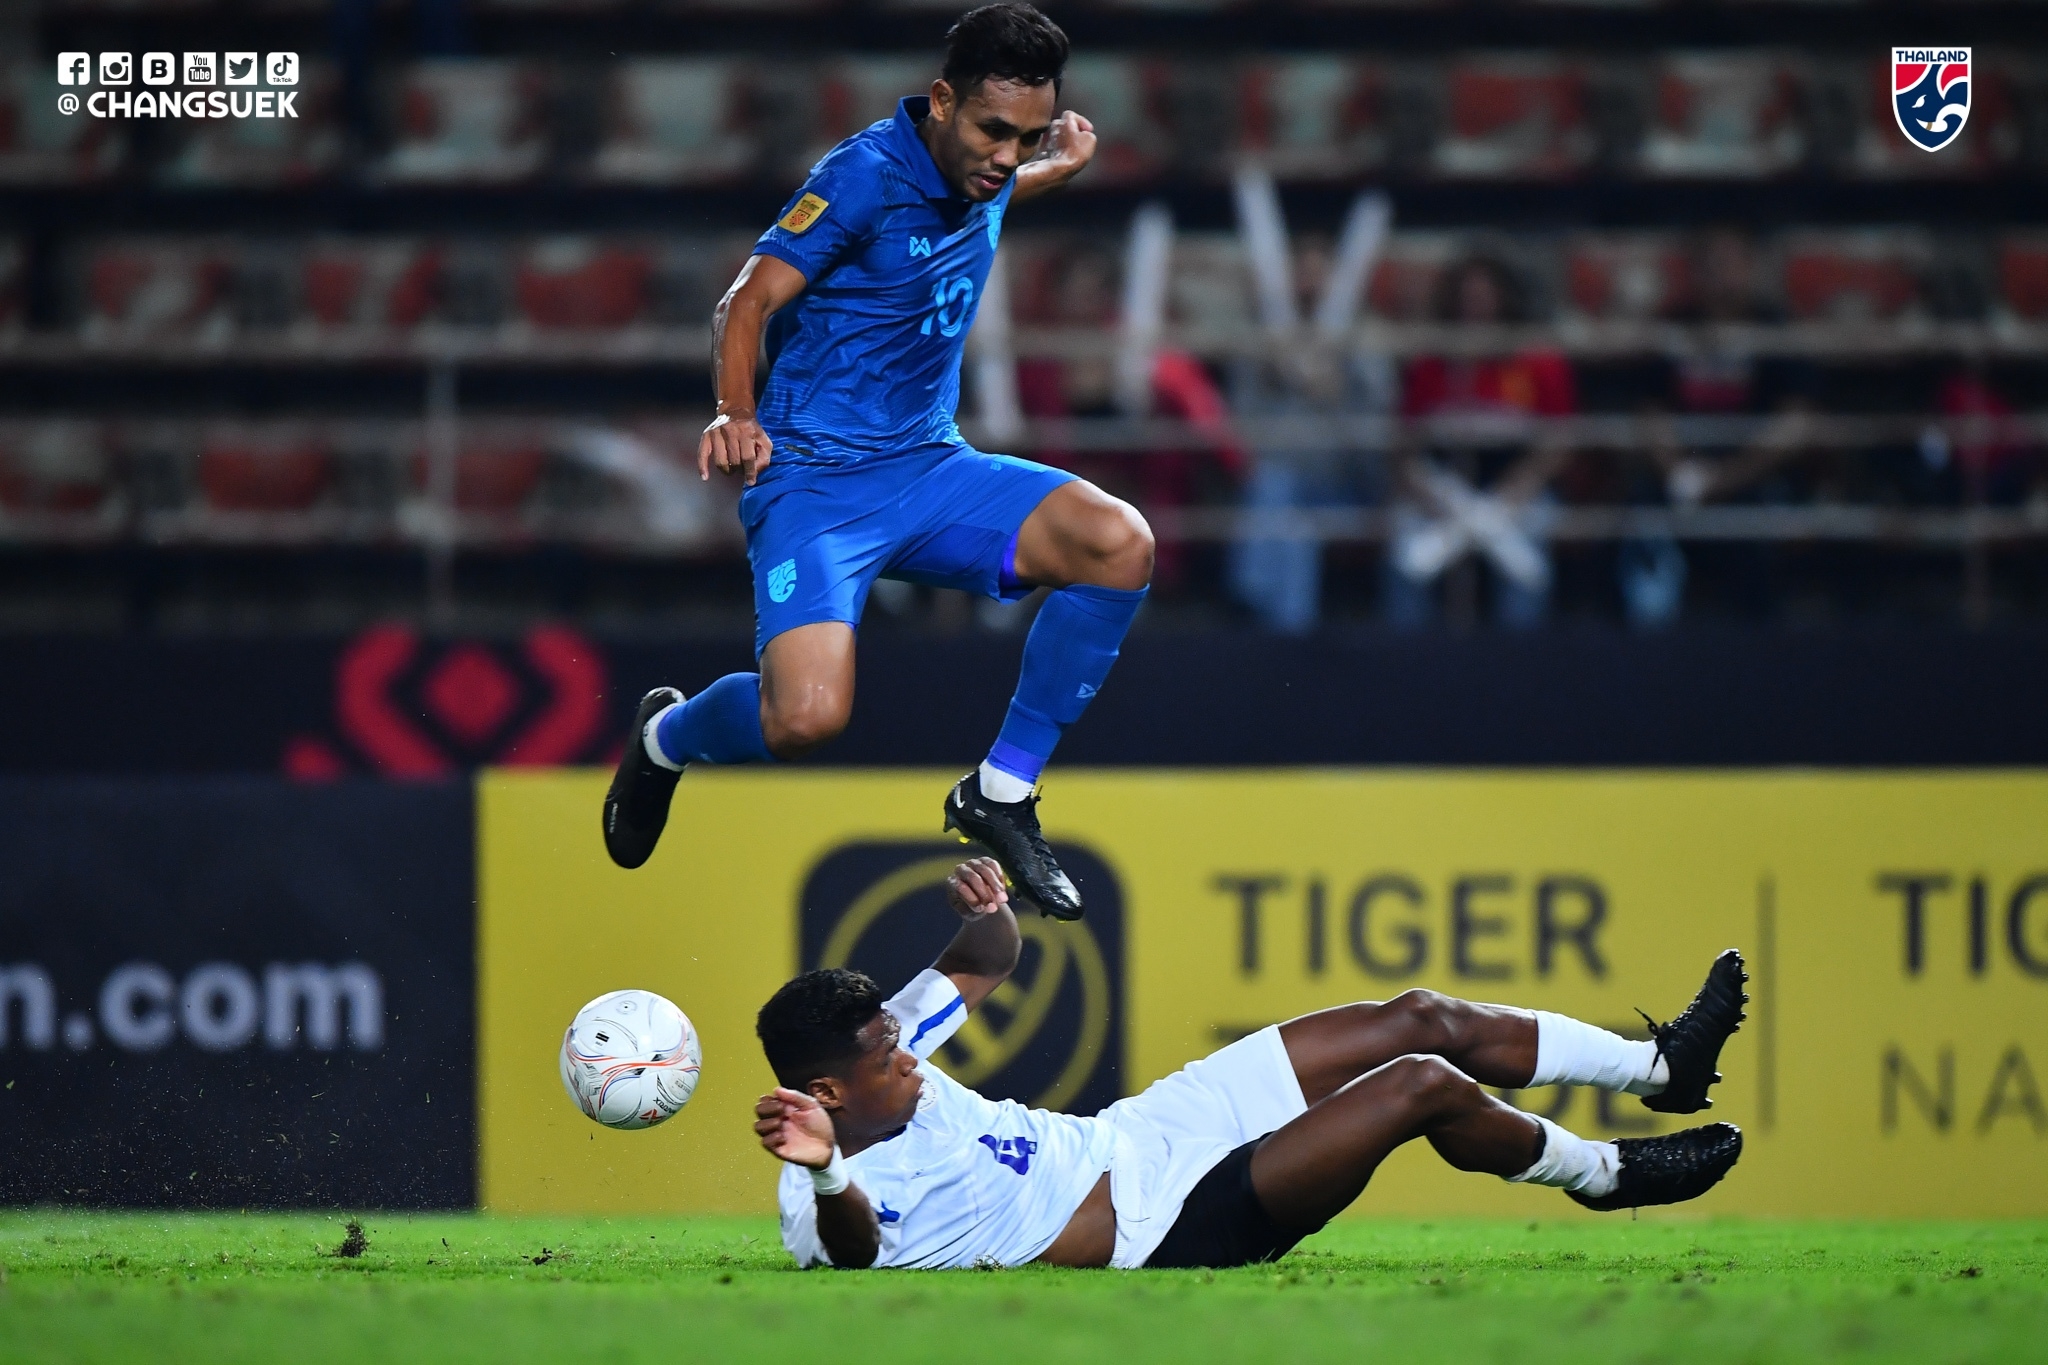 Azkals dalam bahaya tersingkir lebih awal setelah kalah 4-0 dari Thailand di Piala AFF